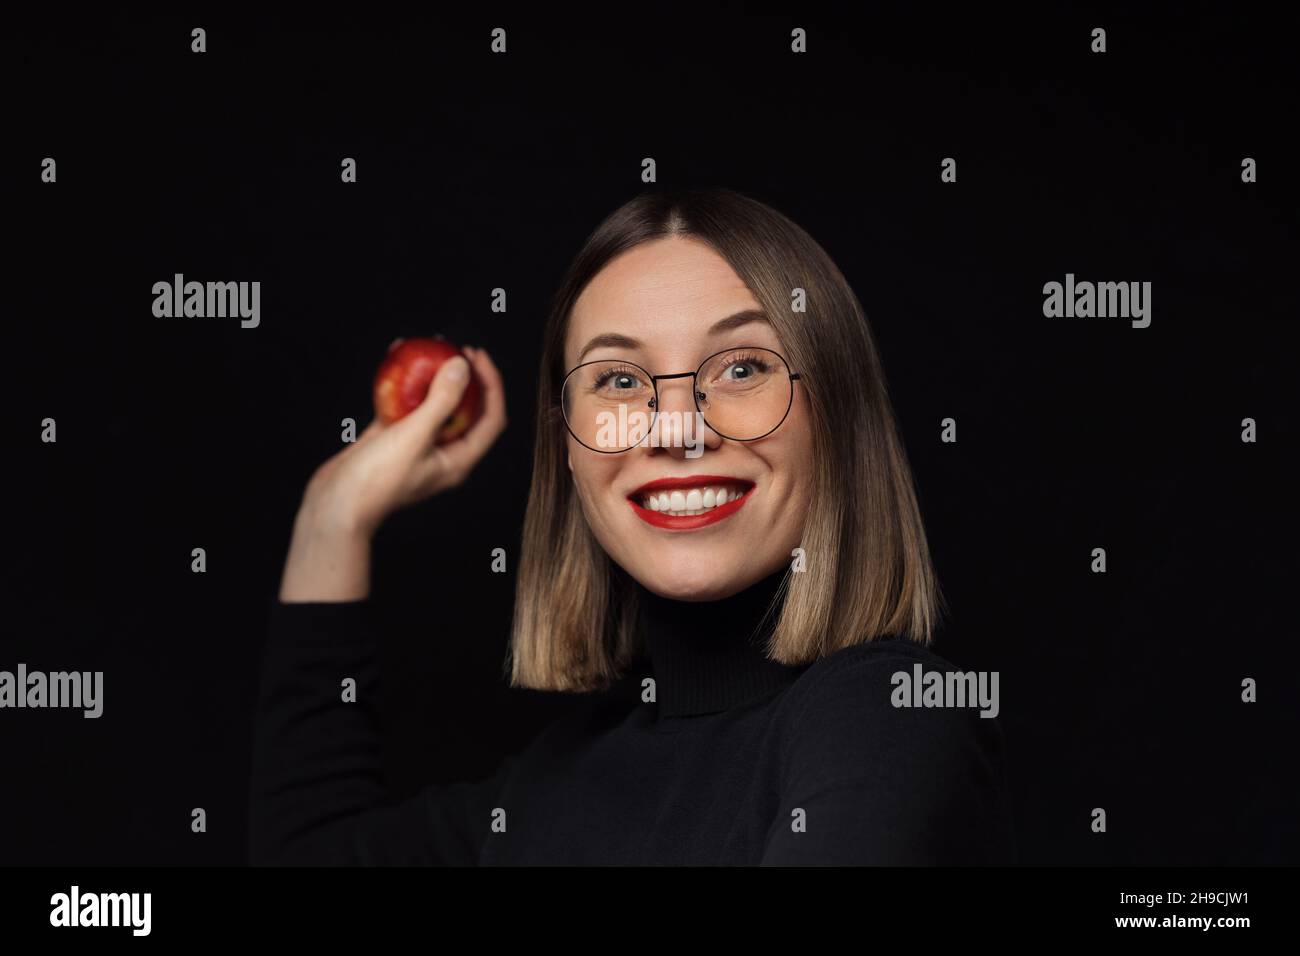 Femme excitée portant des lunettes avec des cadres noirs, avec des lèvres rouges, regardant l'appareil photo veut jeter une pomme rouge sur fond noir. Banque D'Images